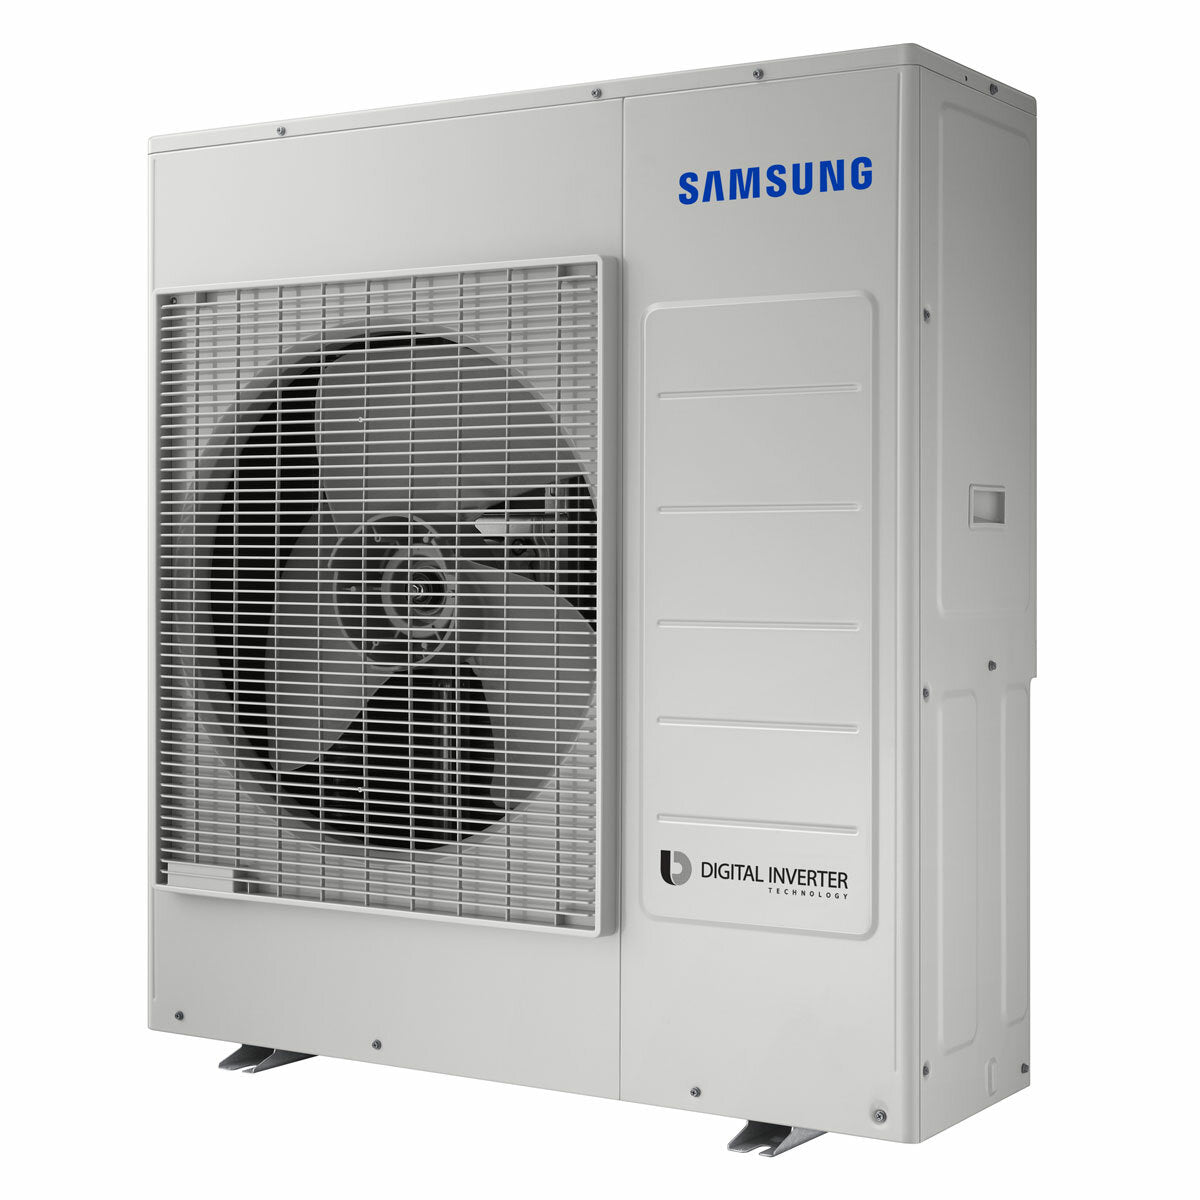 Samsung windfree Klimaanlage Avant Penta Split 7000 + 7000 + 9000 + 9000 + 9000 BTU Inverter A++ WLAN Außengerät 10,0 kW